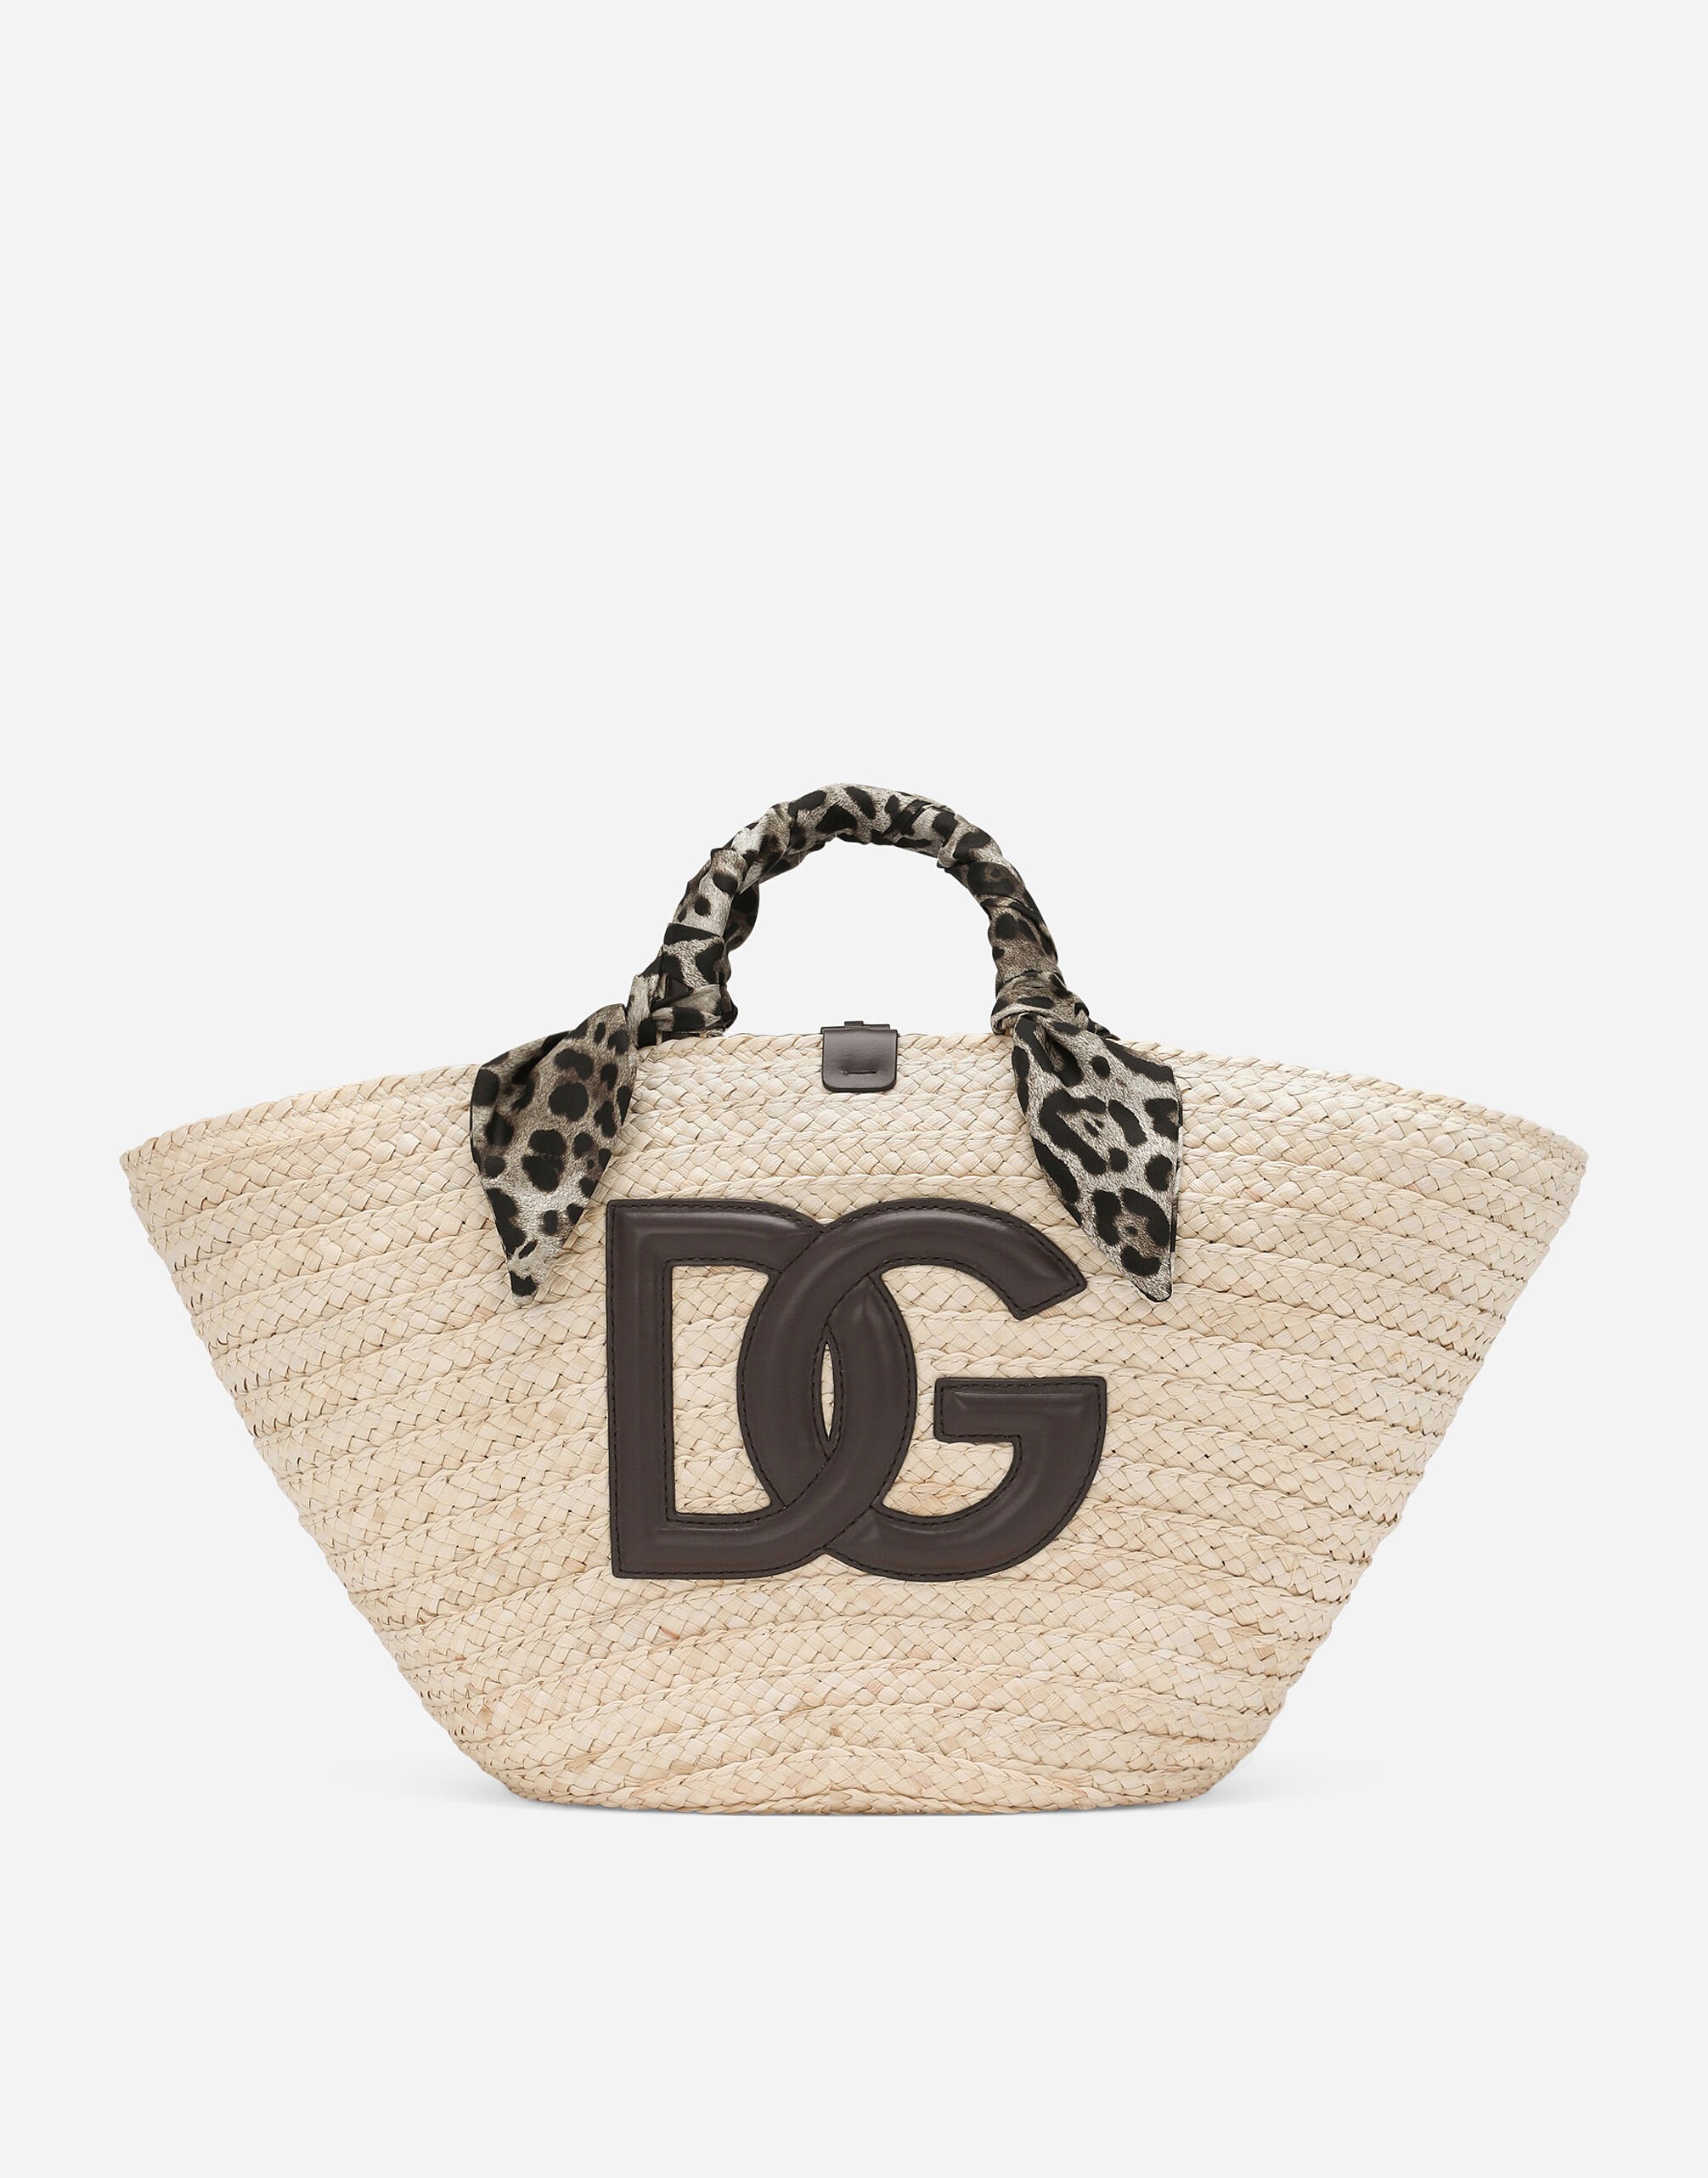 Dolce & Gabbana حقيبة تسوق كيندرا متوسطة متعدد الألوان BB7270AR355